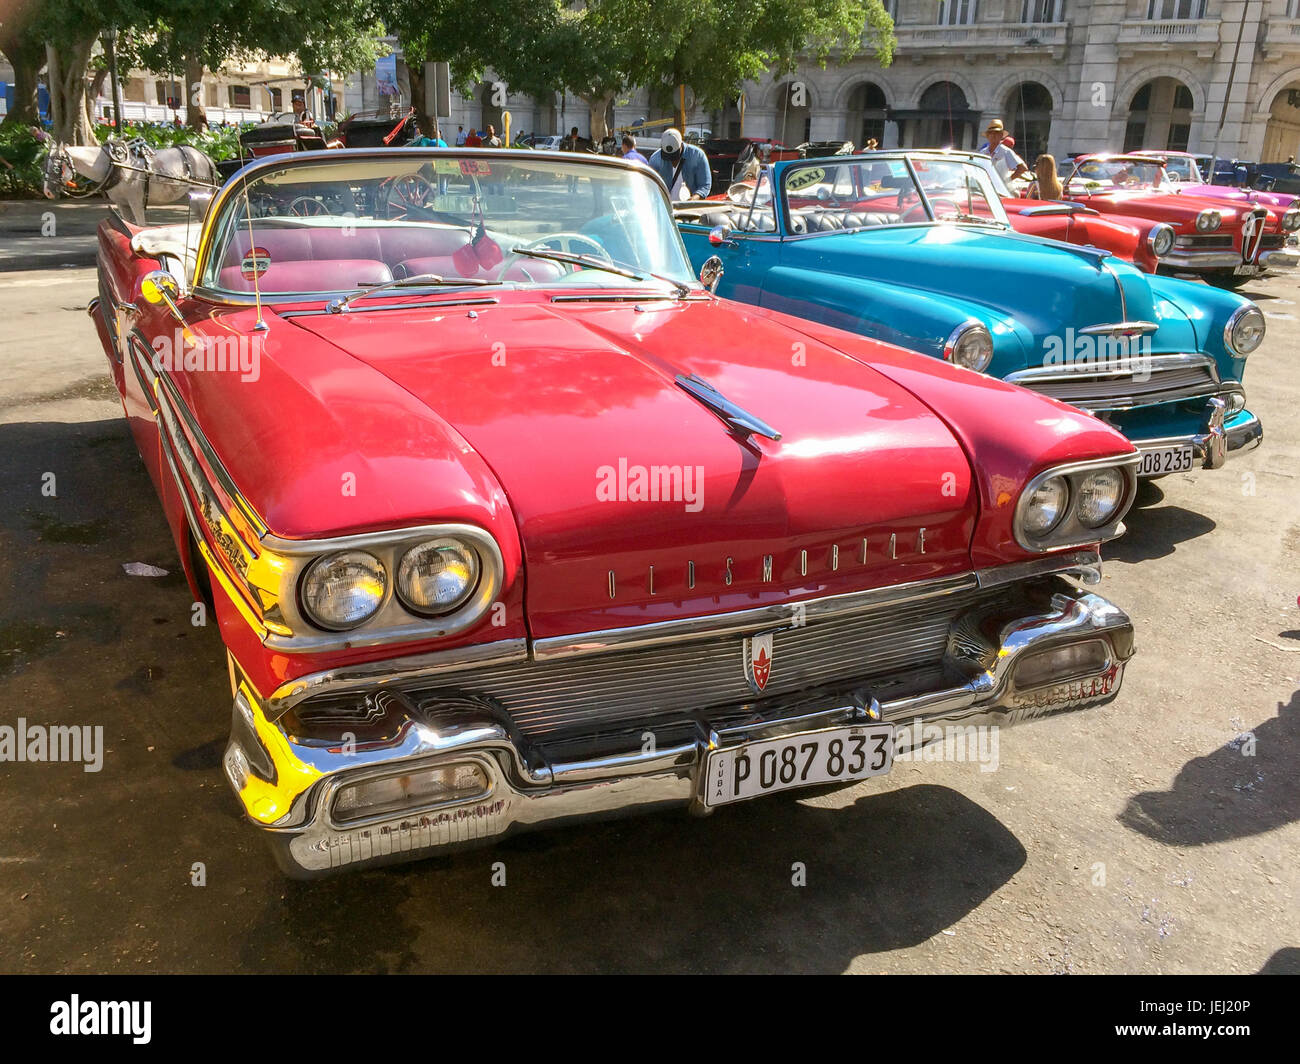 L'Avana, Cuba - 18 aprile: Vintage american classic cars parcheggiato nella strada principale di l'Avana Vecchia, il 18 aprile 2016 a L'Avana Foto Stock